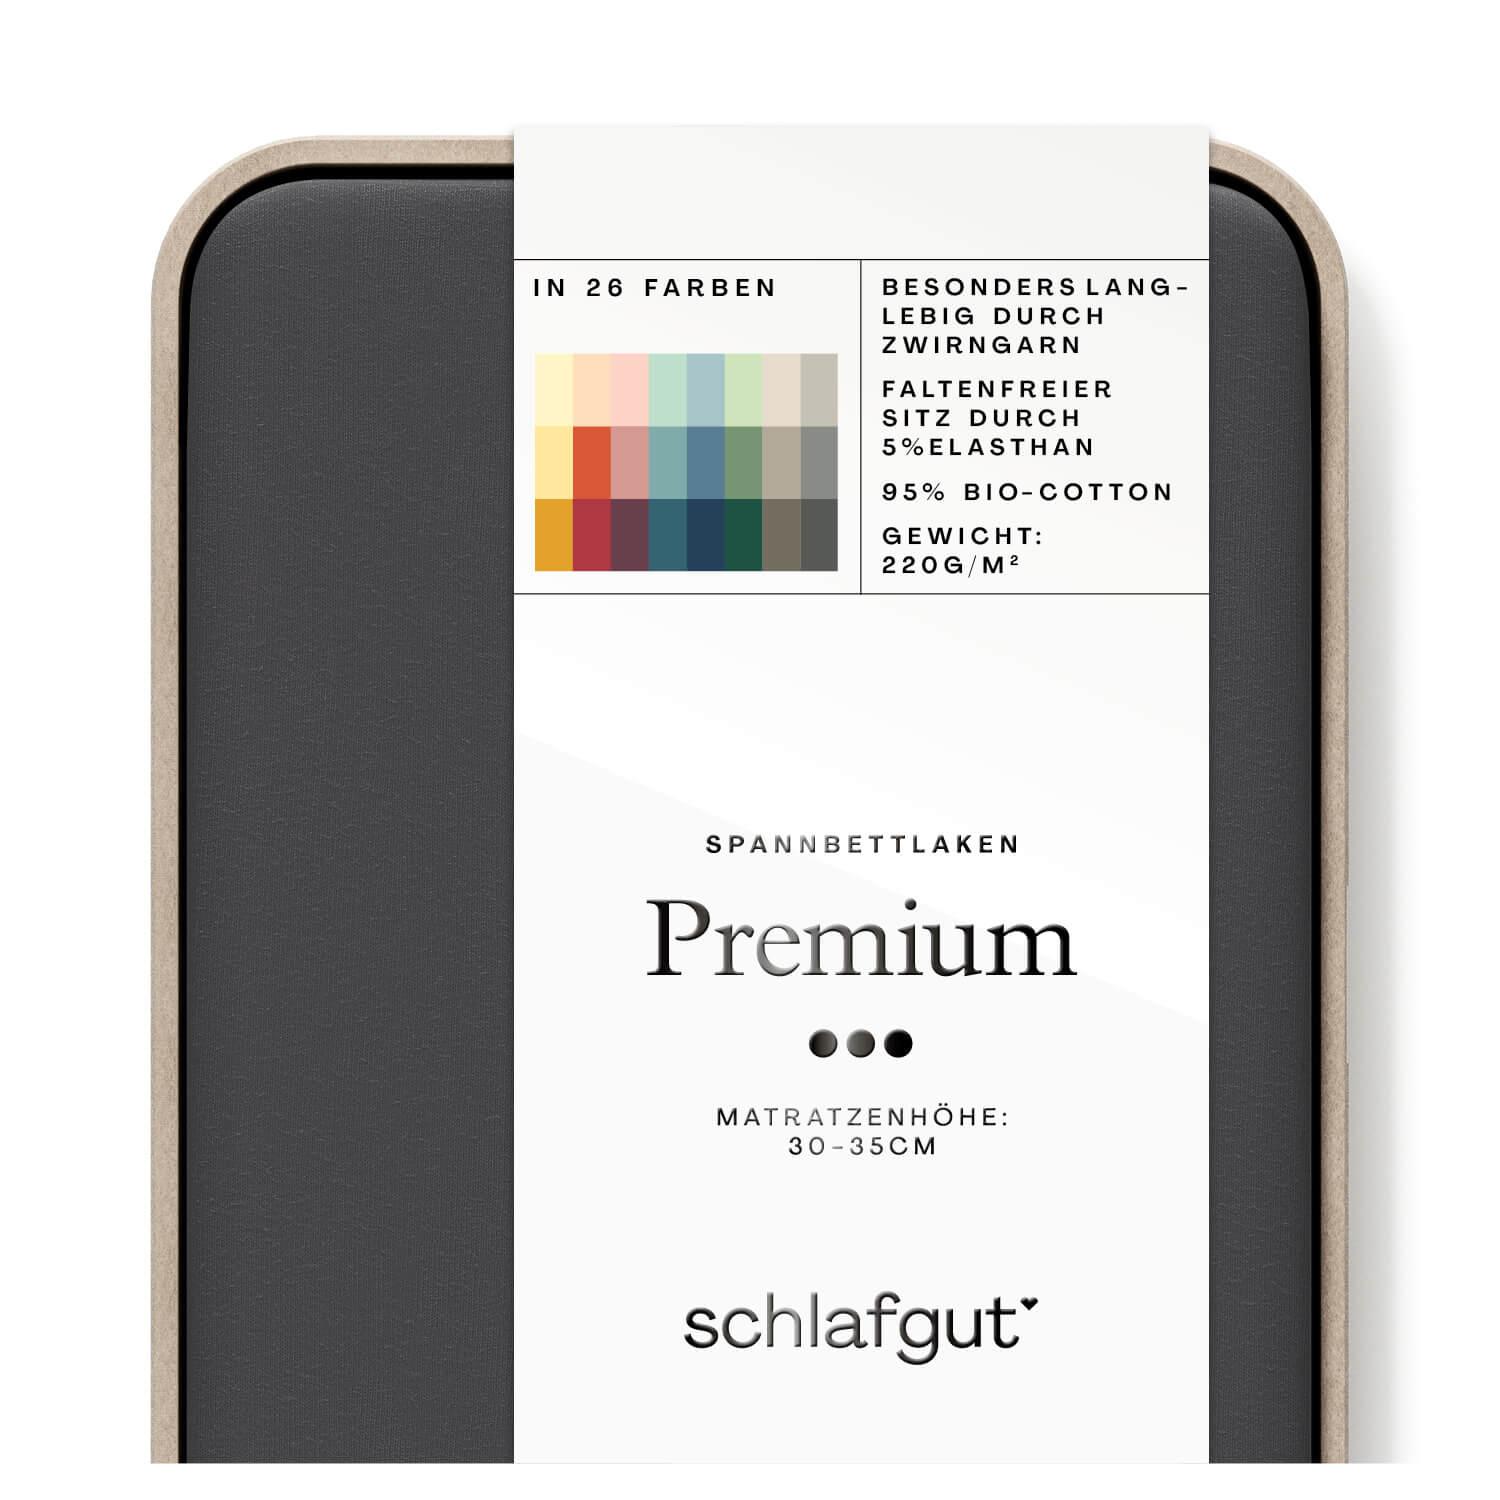 Das Produktbild vom Spannbettlaken der Reihe Premium in Farbe grey deep von Schlafgut